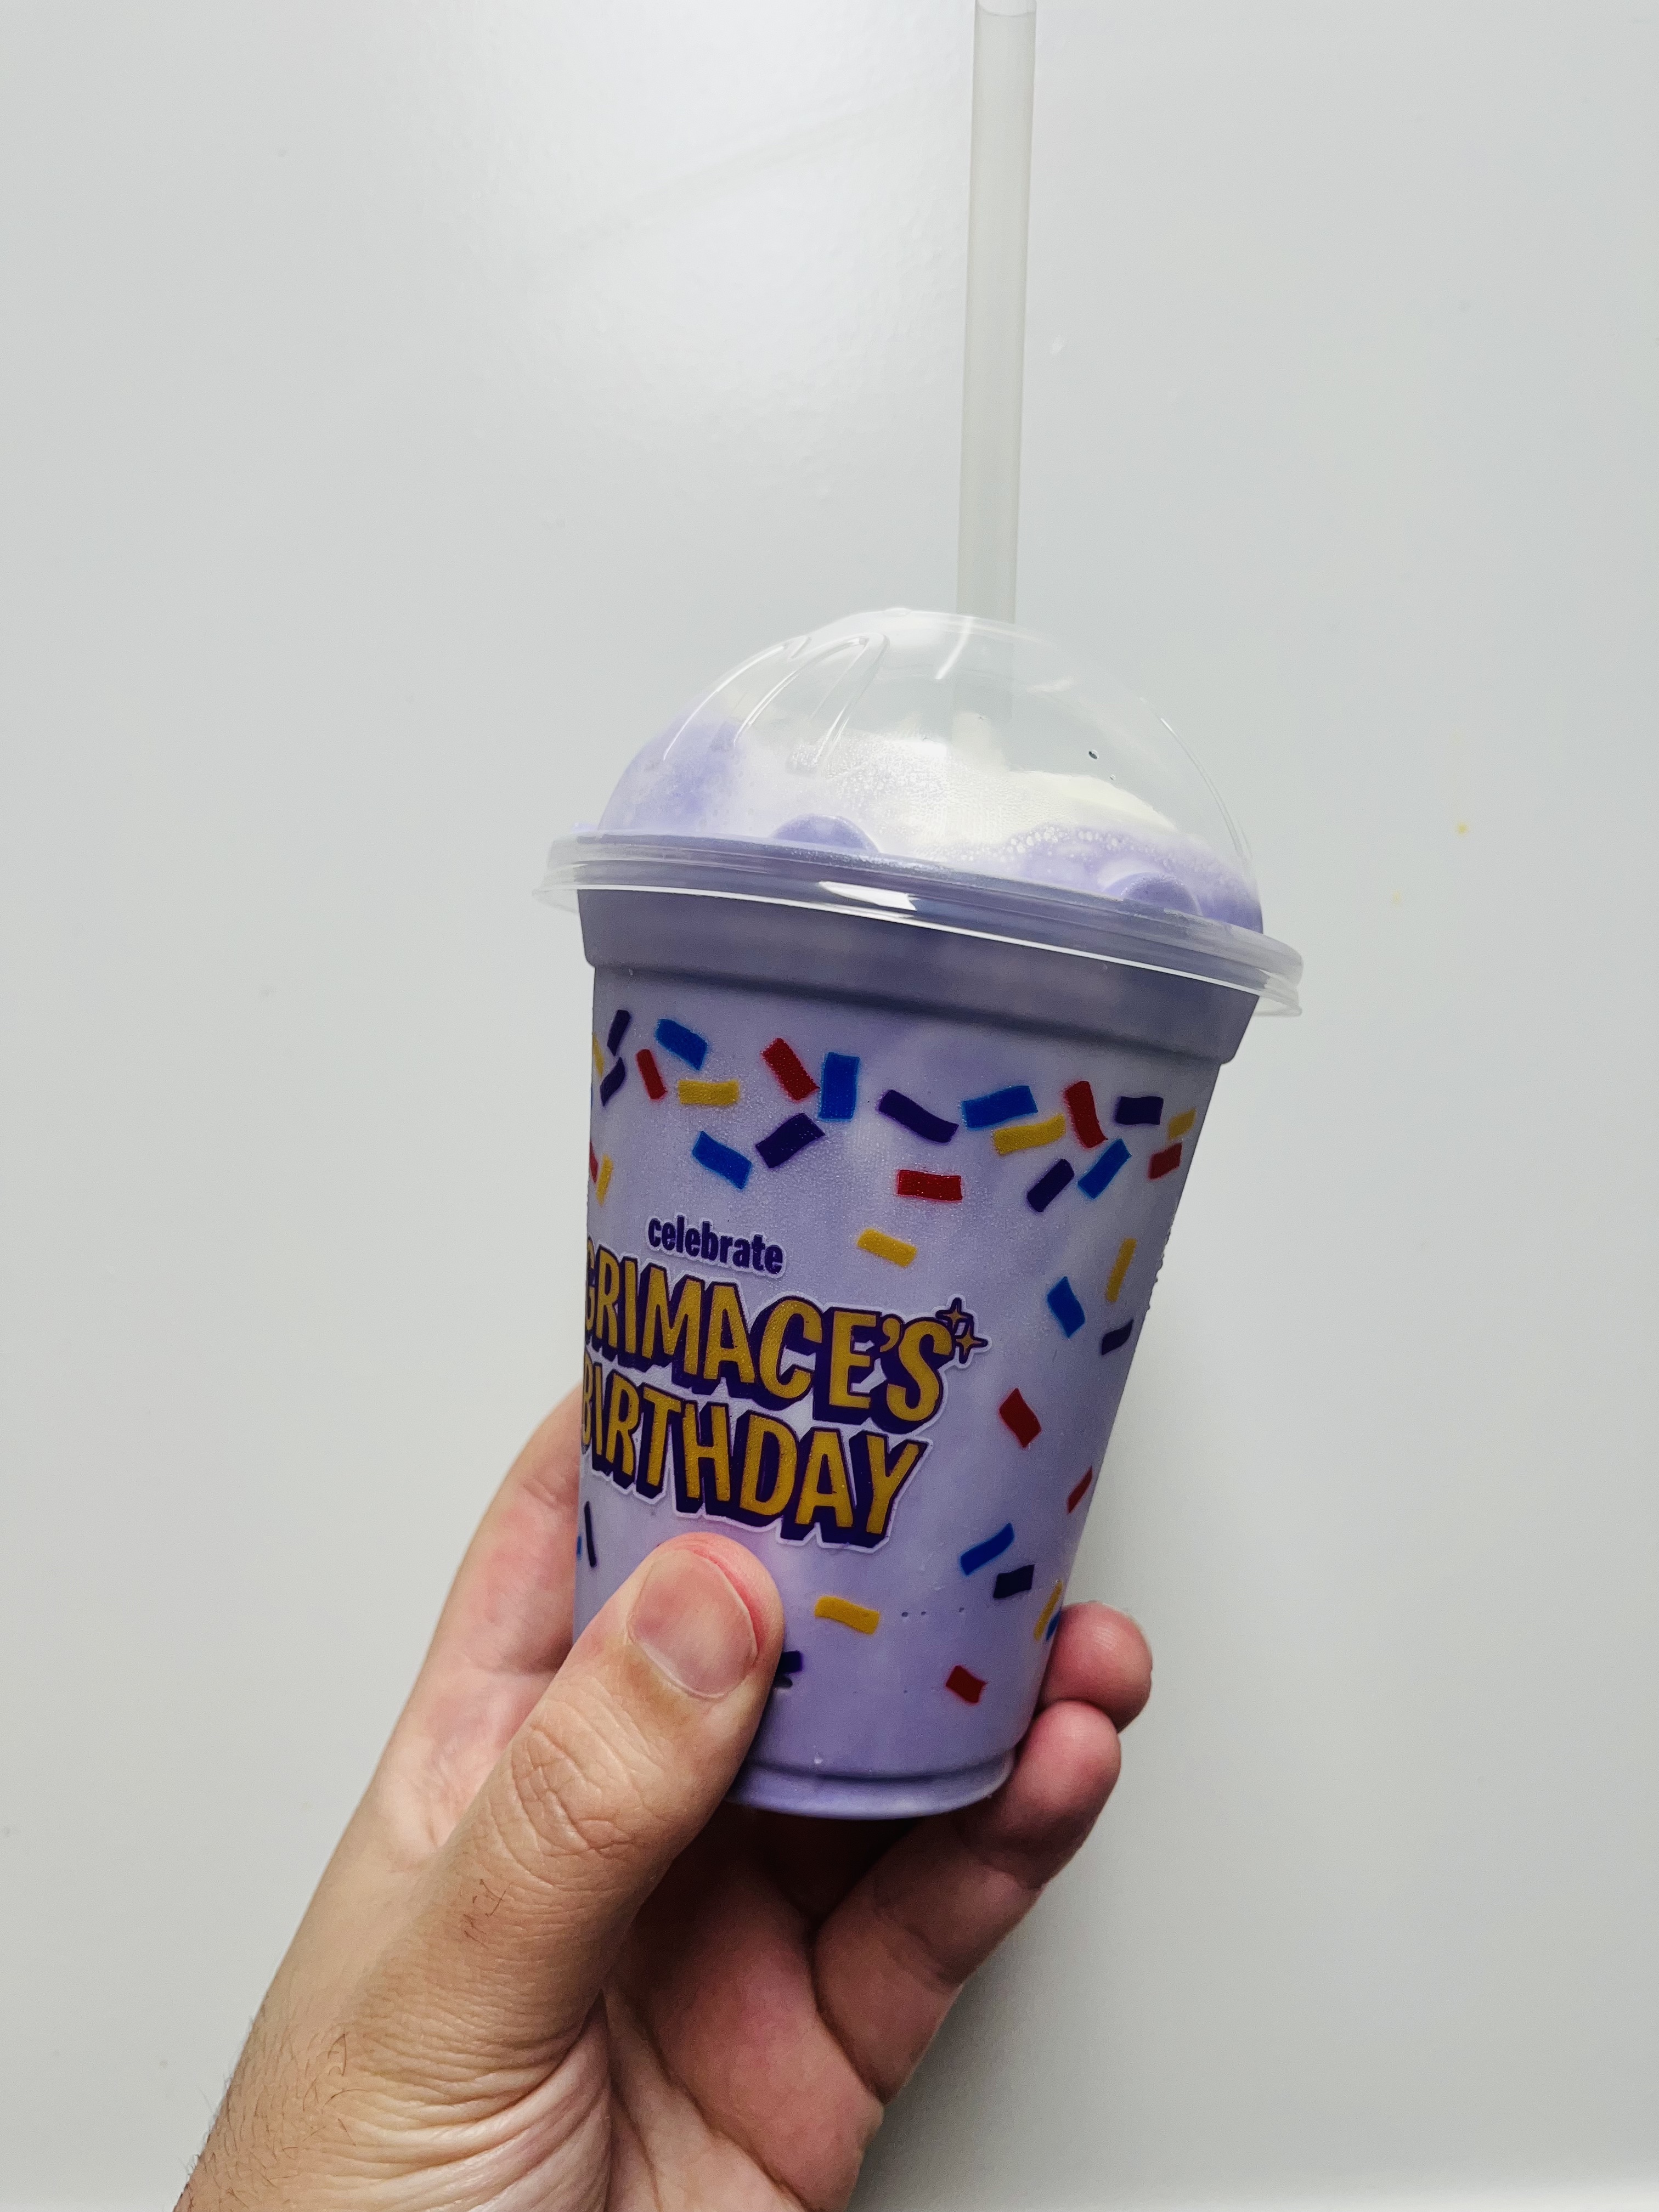 McDonald's Grimace Birthday Milkshake Review: Is It Good?